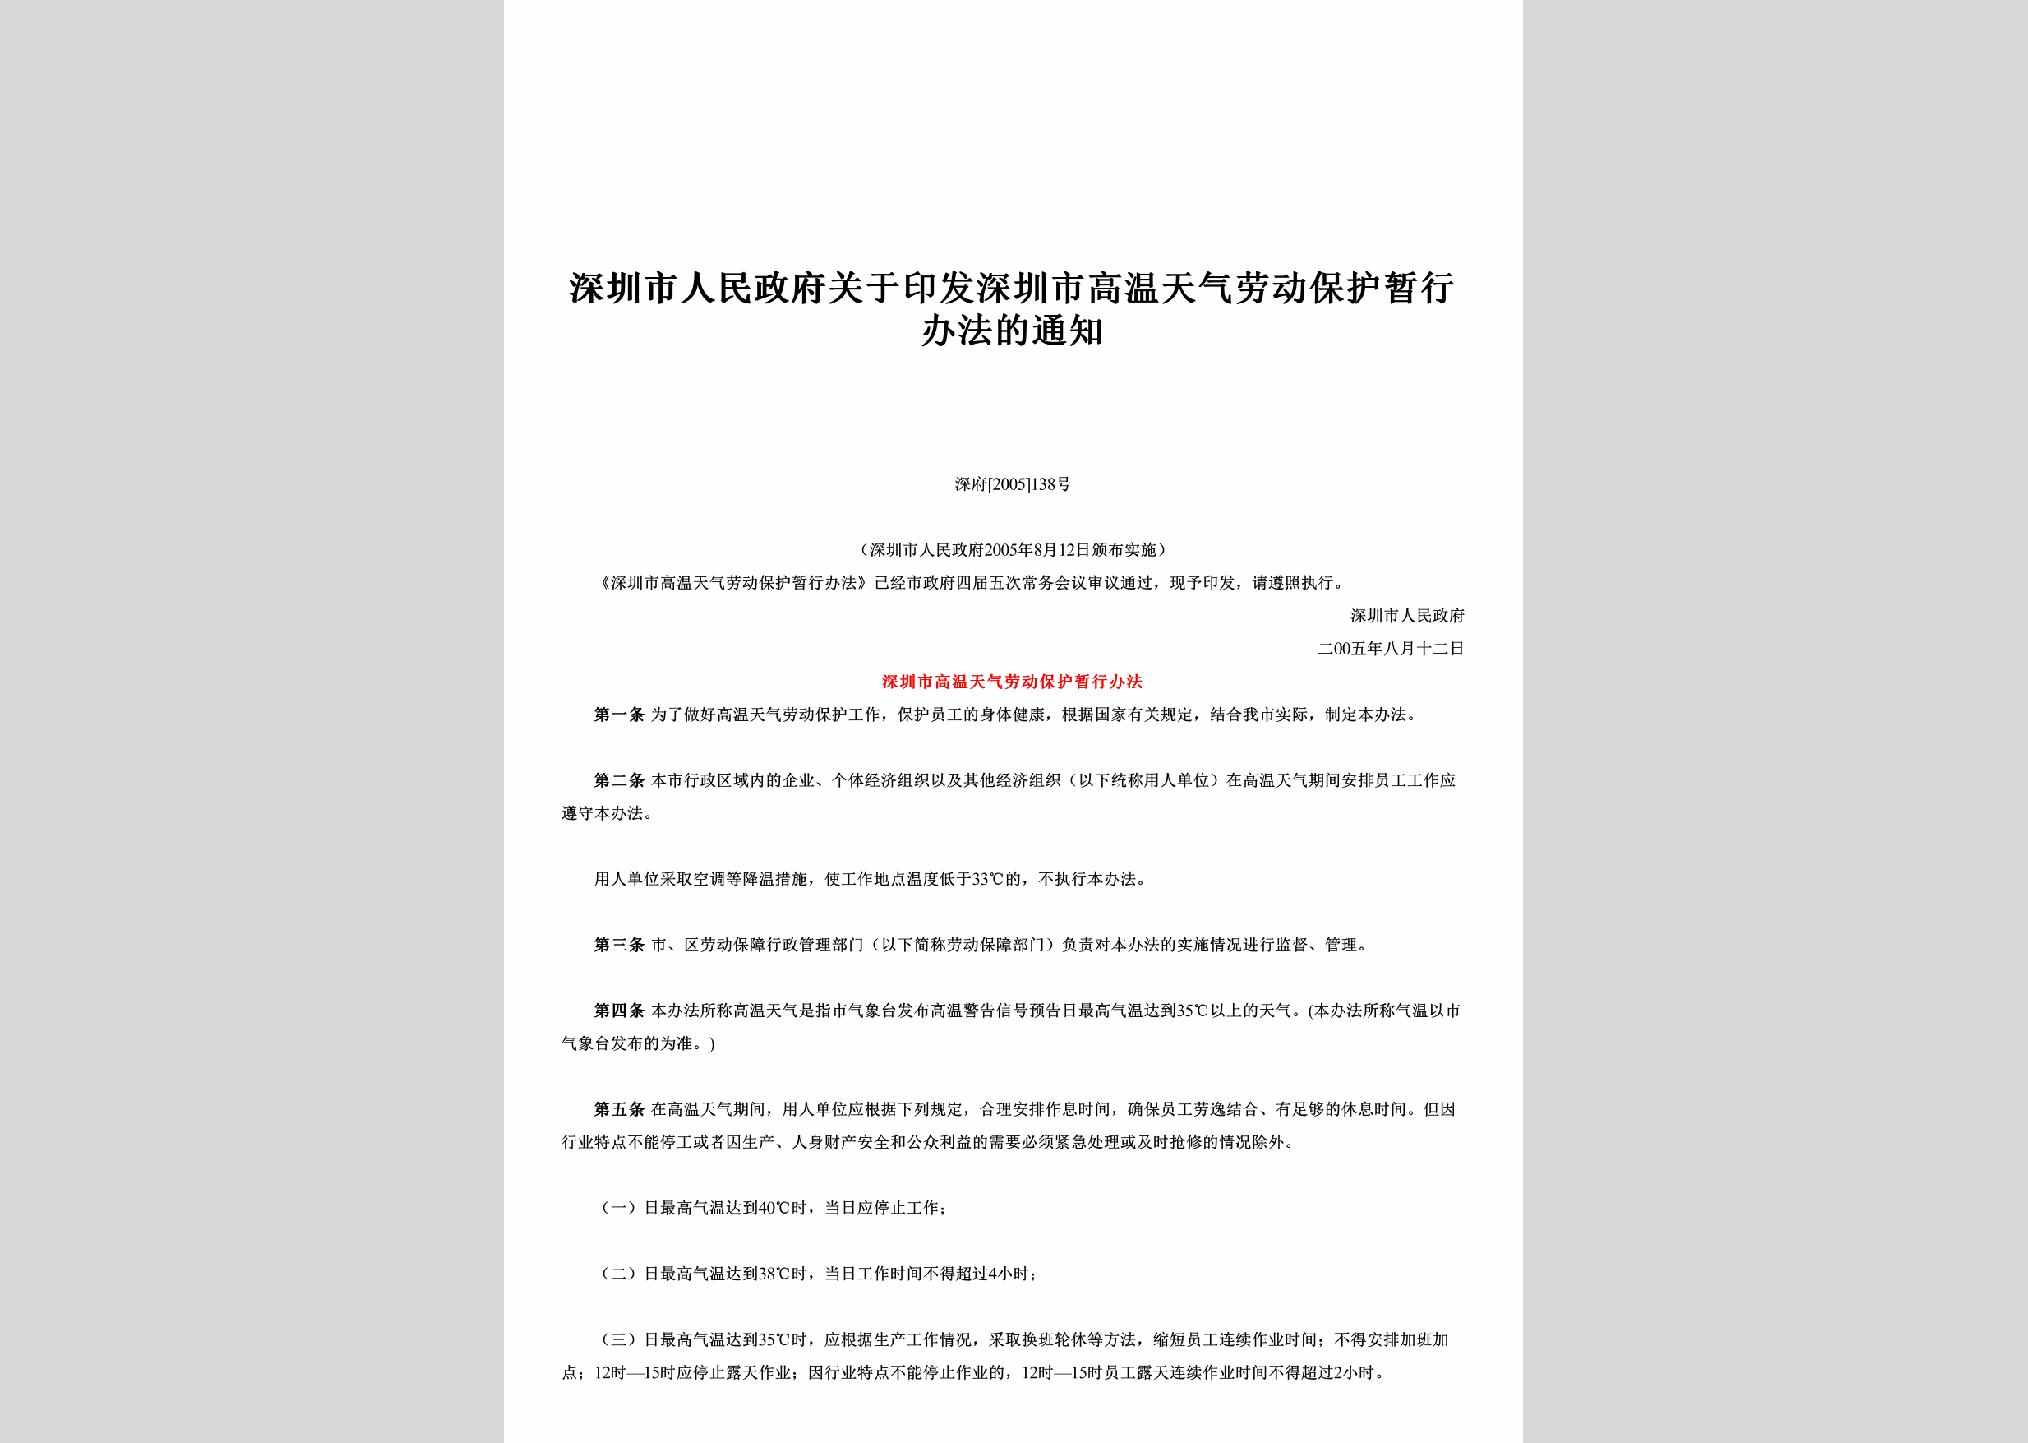 深府[2005]138号：关于印发深圳市高温天气劳动保护暂行办法的通知